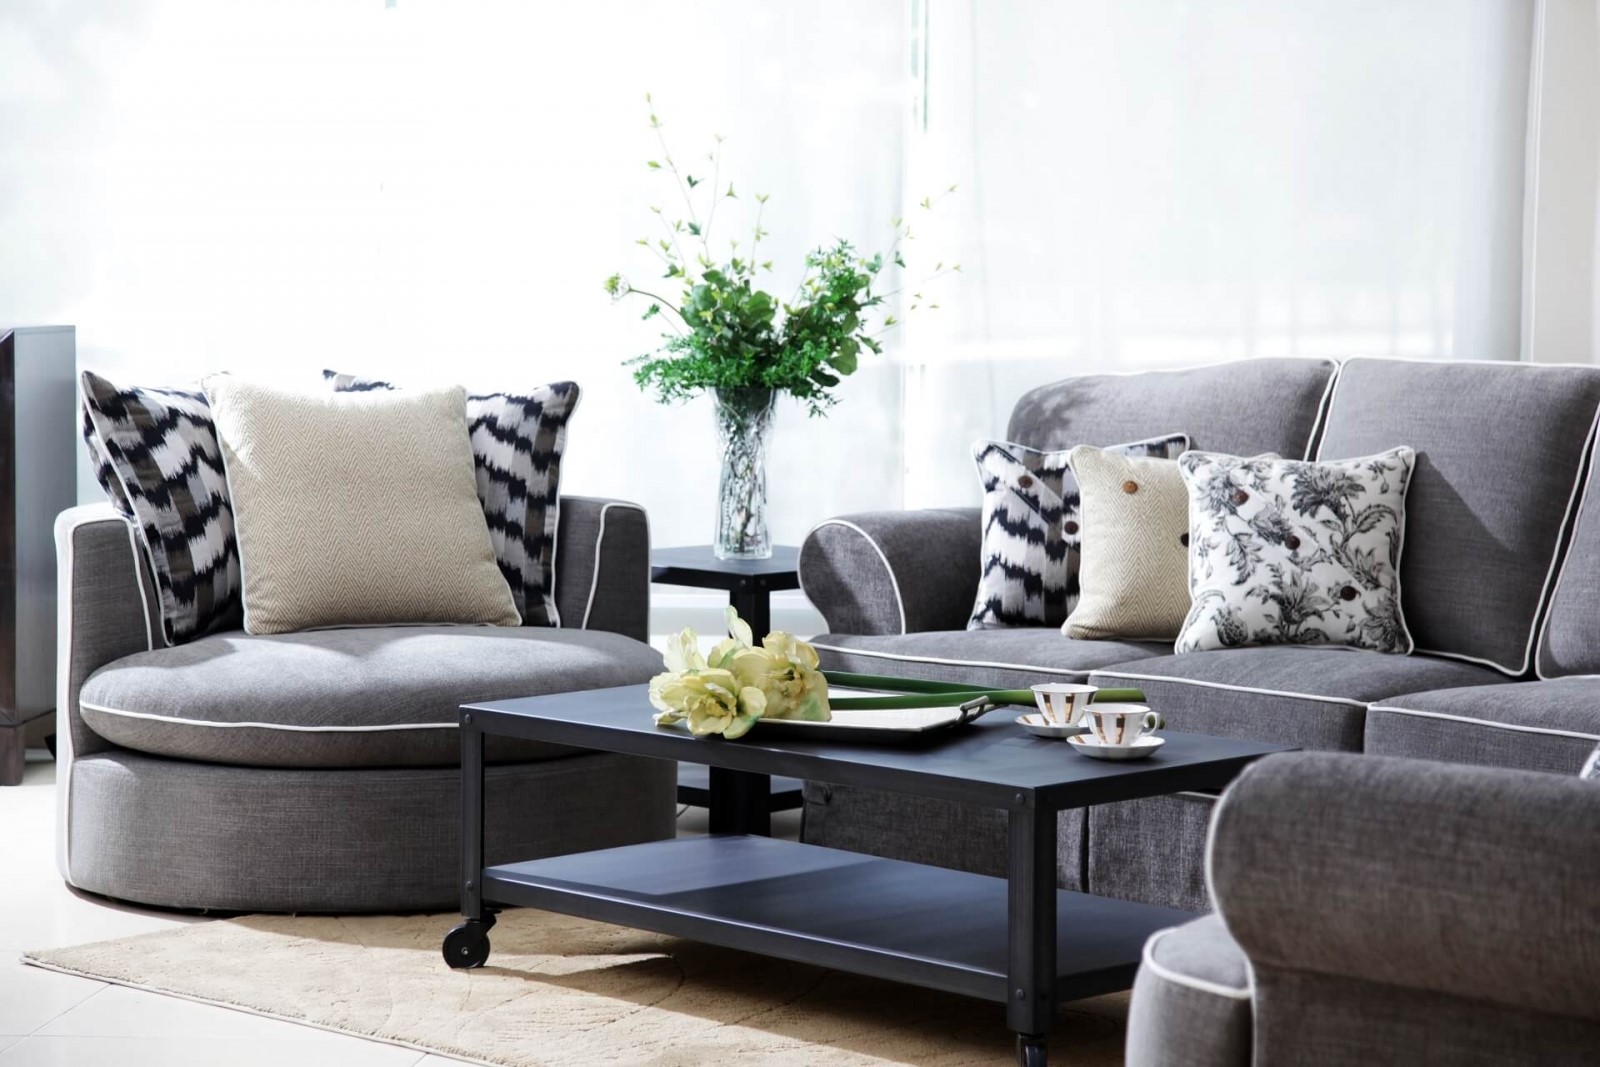 Tăng tính thẩm mỹ cho không gian với ghế sofa làm từ vải nhung